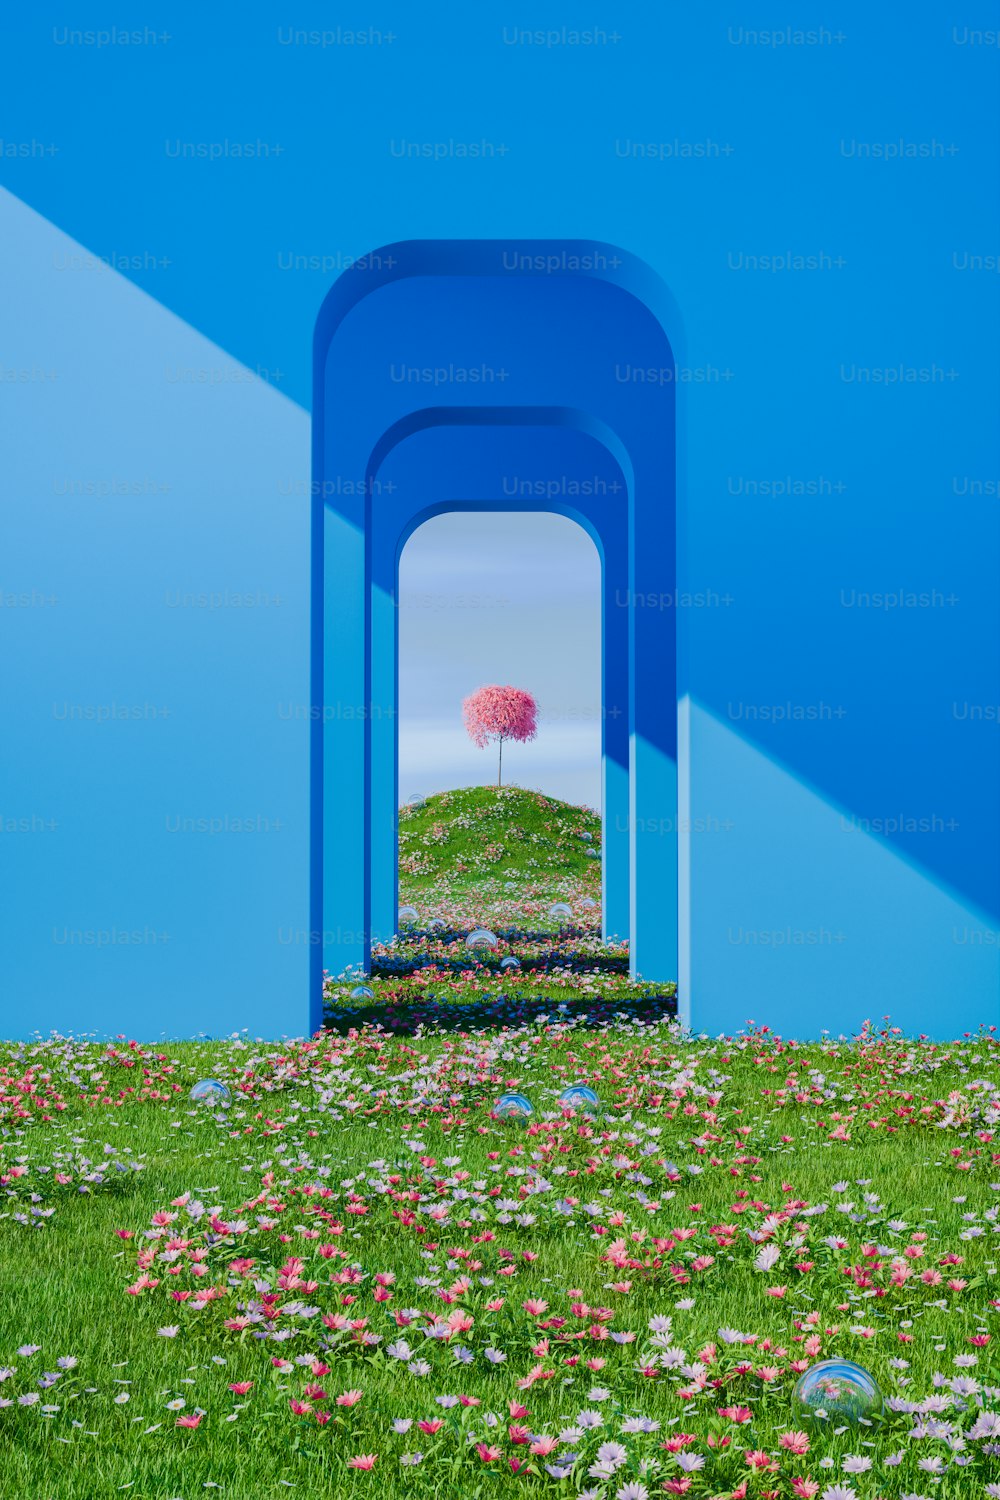 Un arbre rose au milieu d’un champ de fleurs